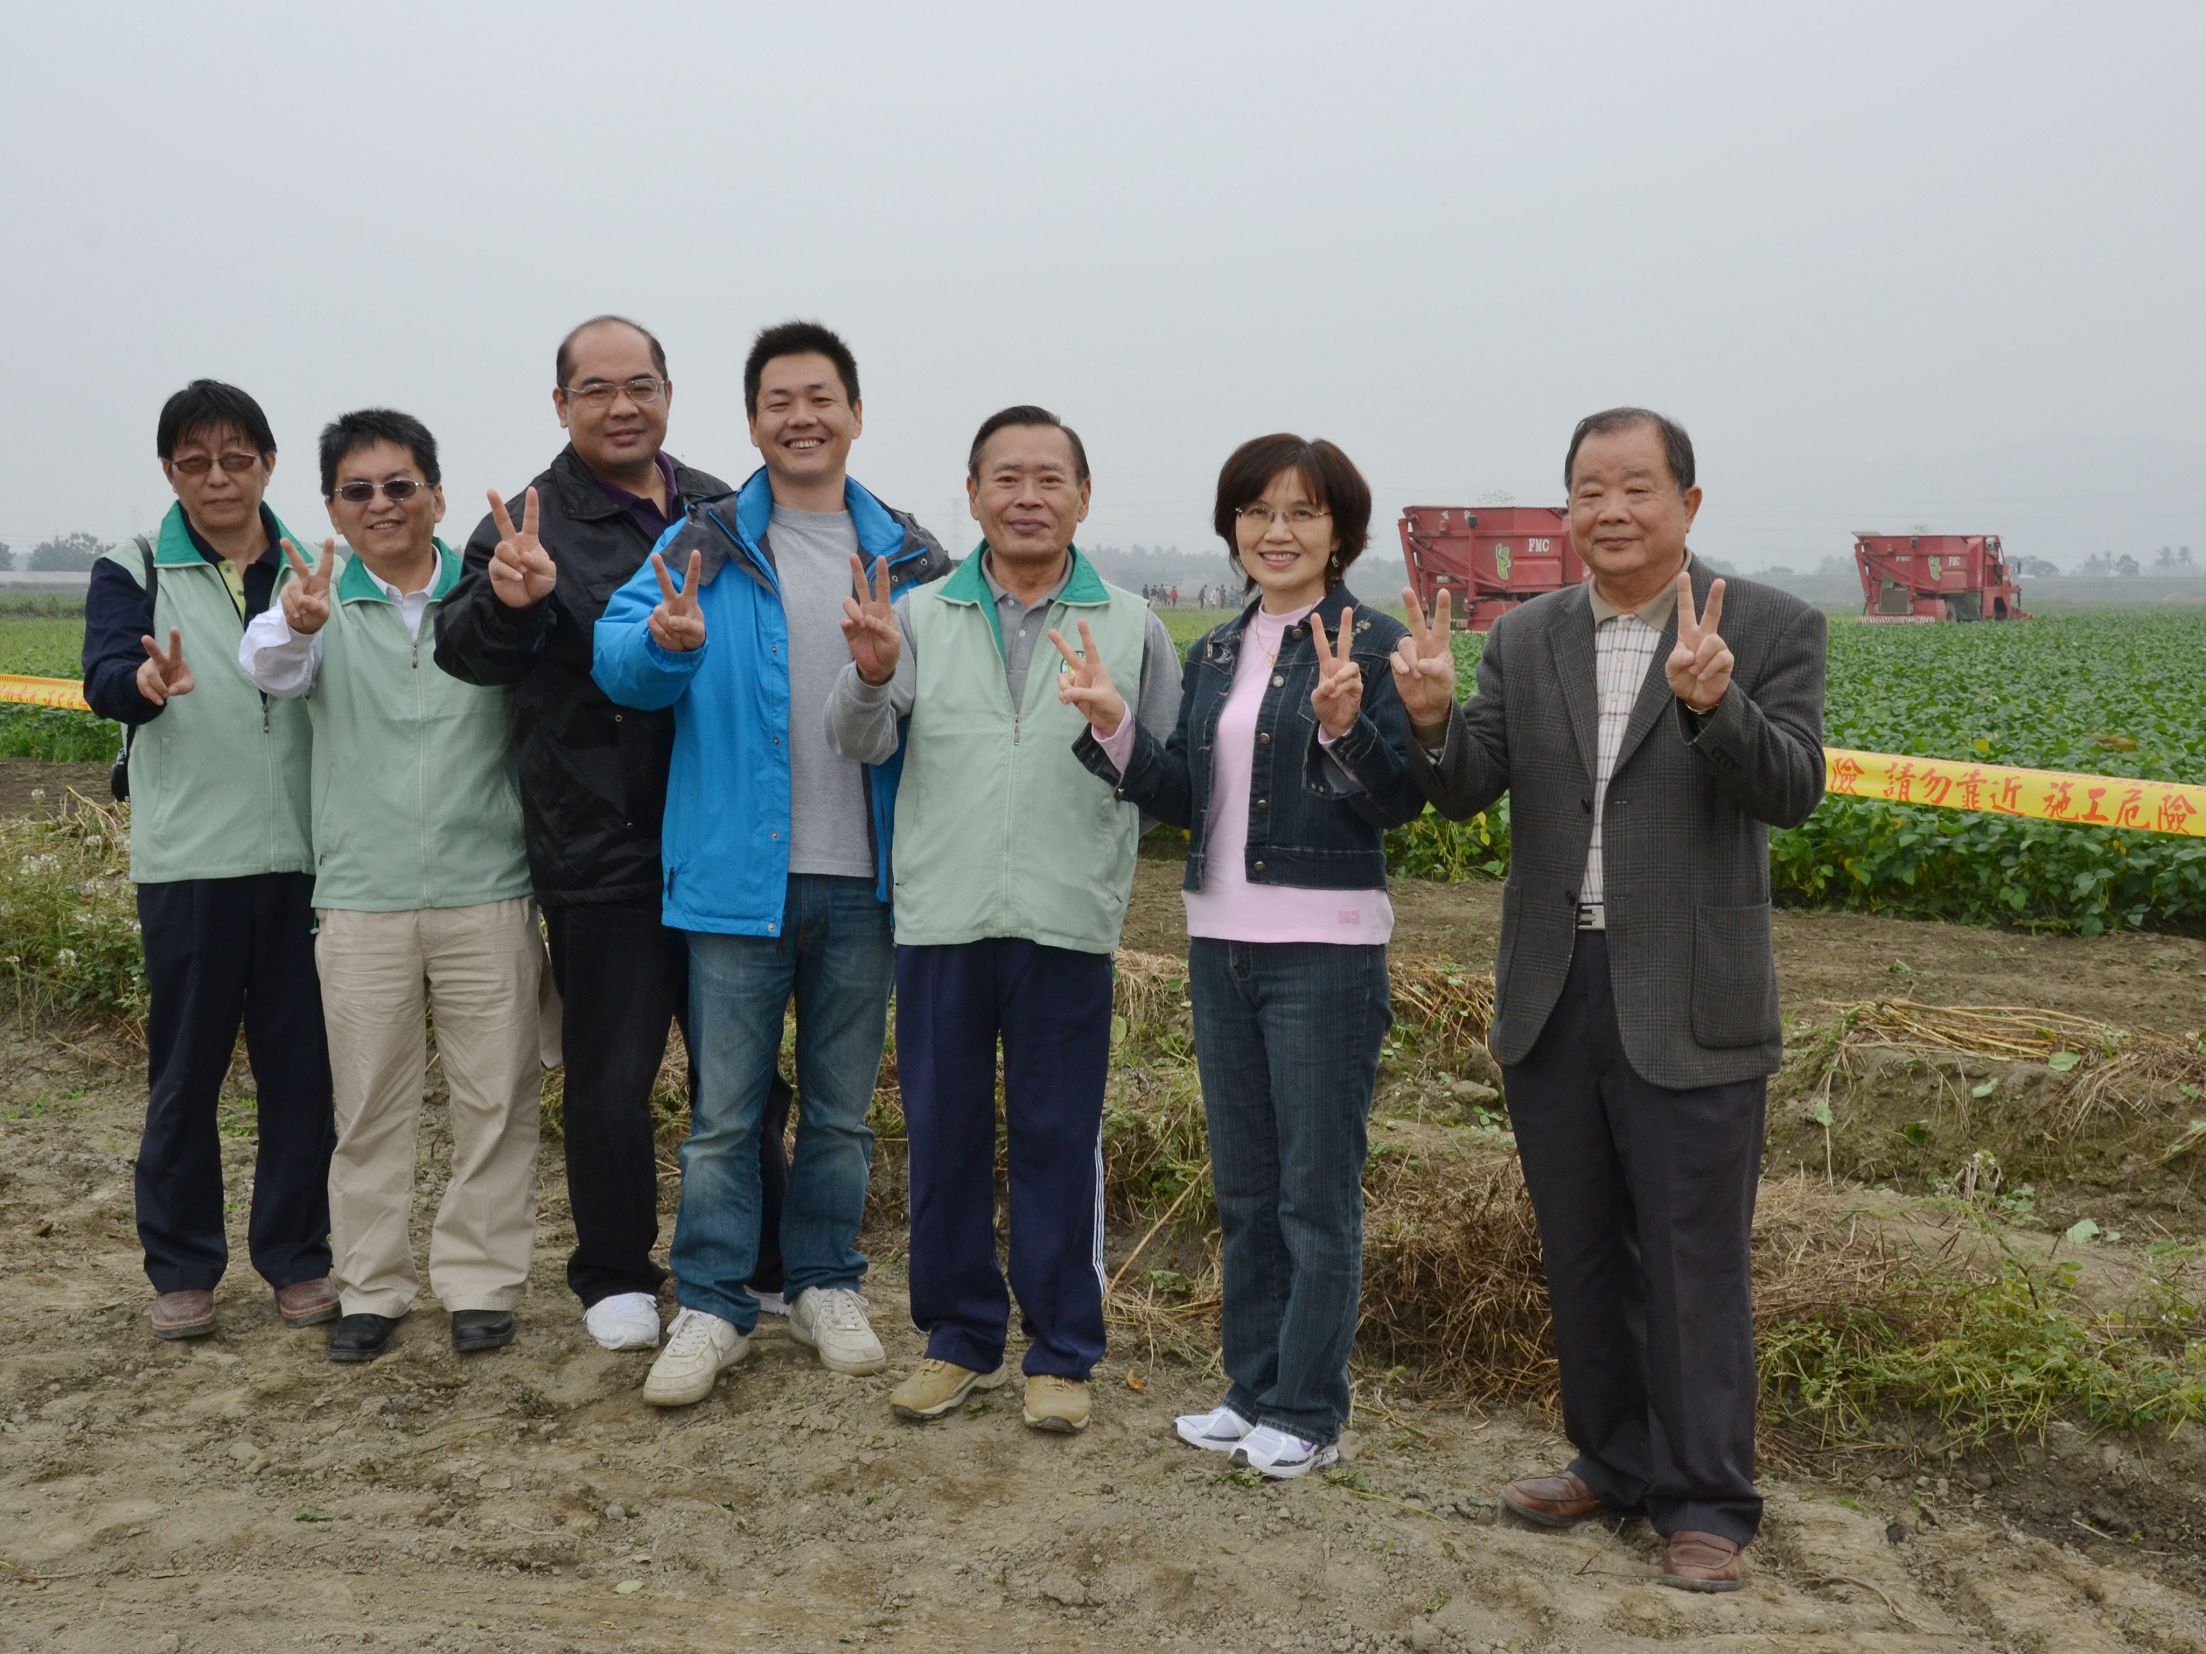 農糧署林麗芳副署長(右2)、高雄場黃場長(右3)及台灣區冷凍蔬果工業同業公會劉貴坪理事長一同參與百賢農產公司的採豆活動。